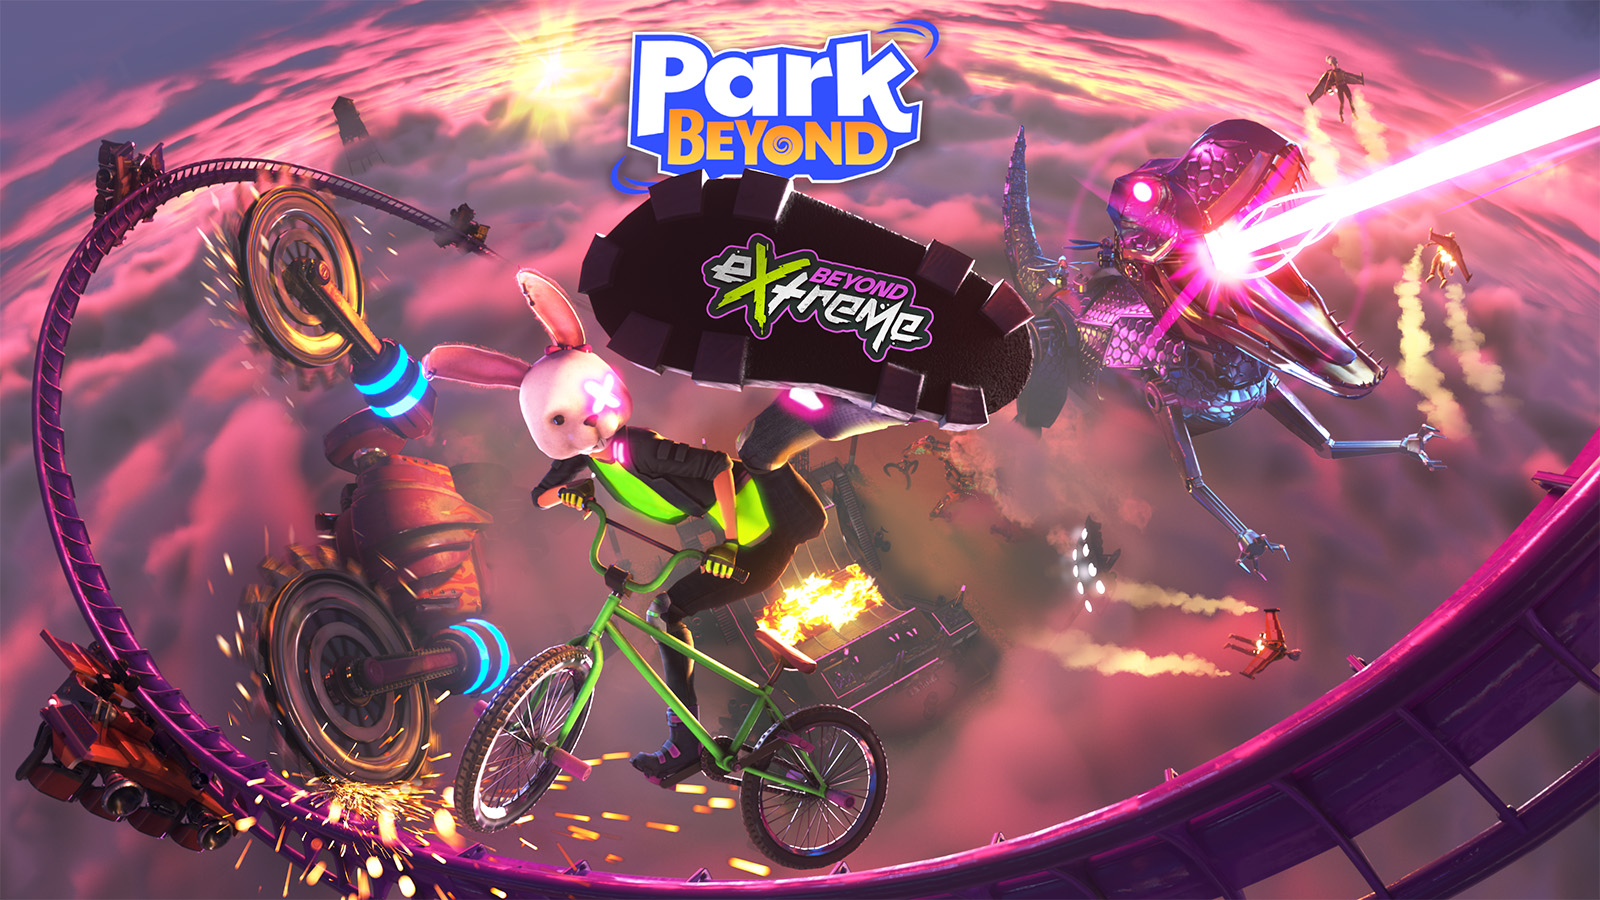 Park Beyond - Beyond eXtreme DLC